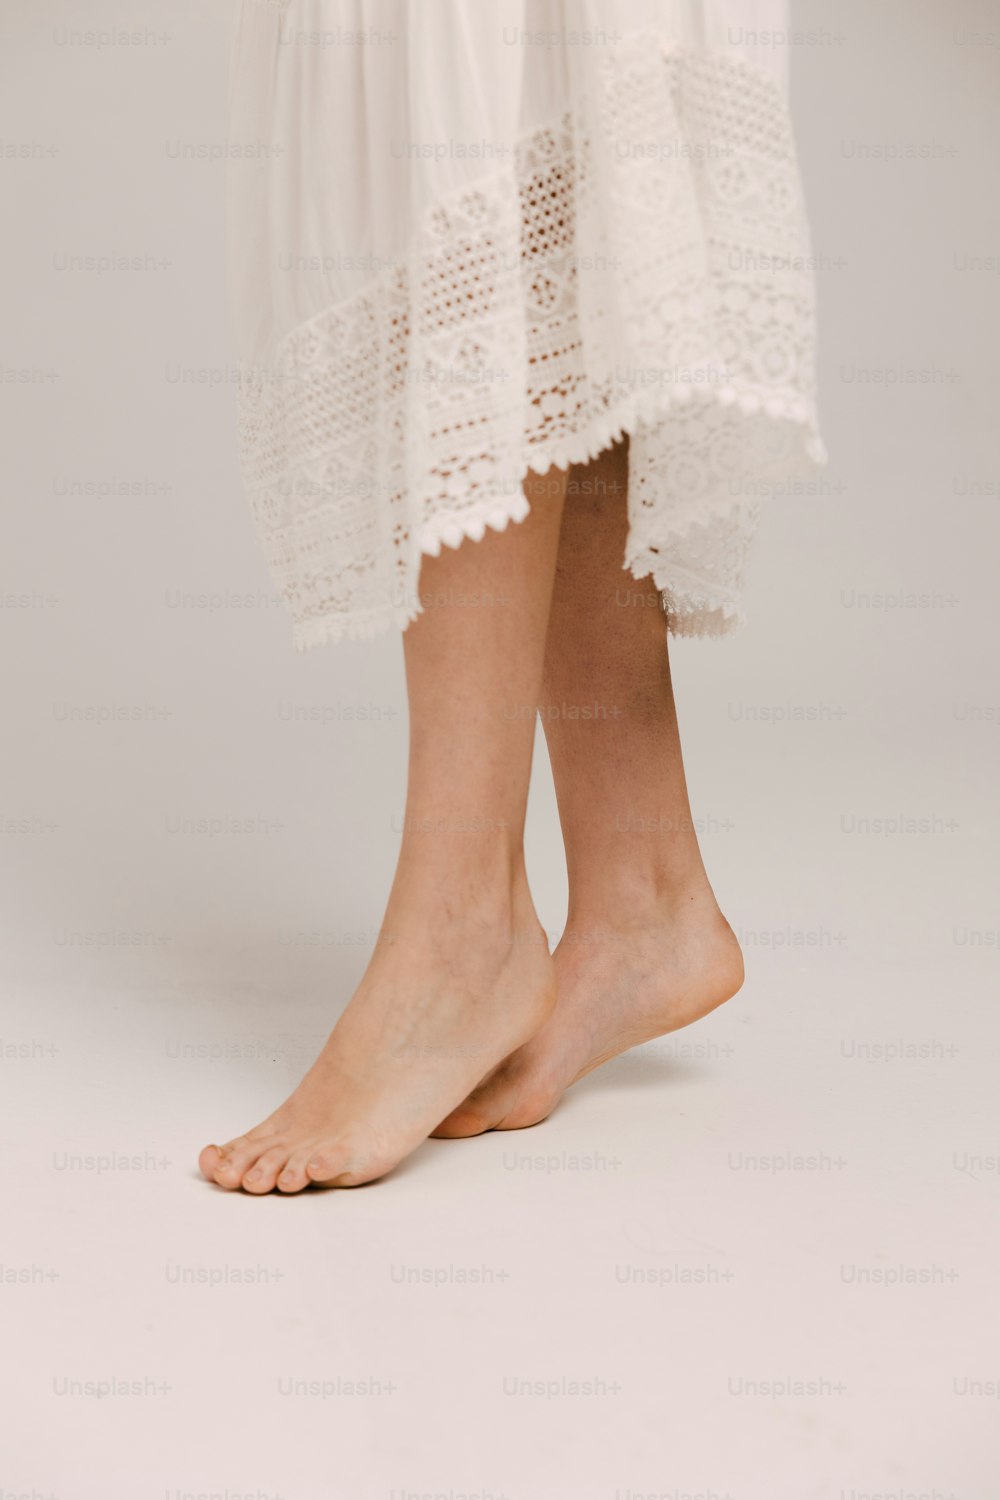 흰 드레스를 입은 사람의 다리 클로즈업